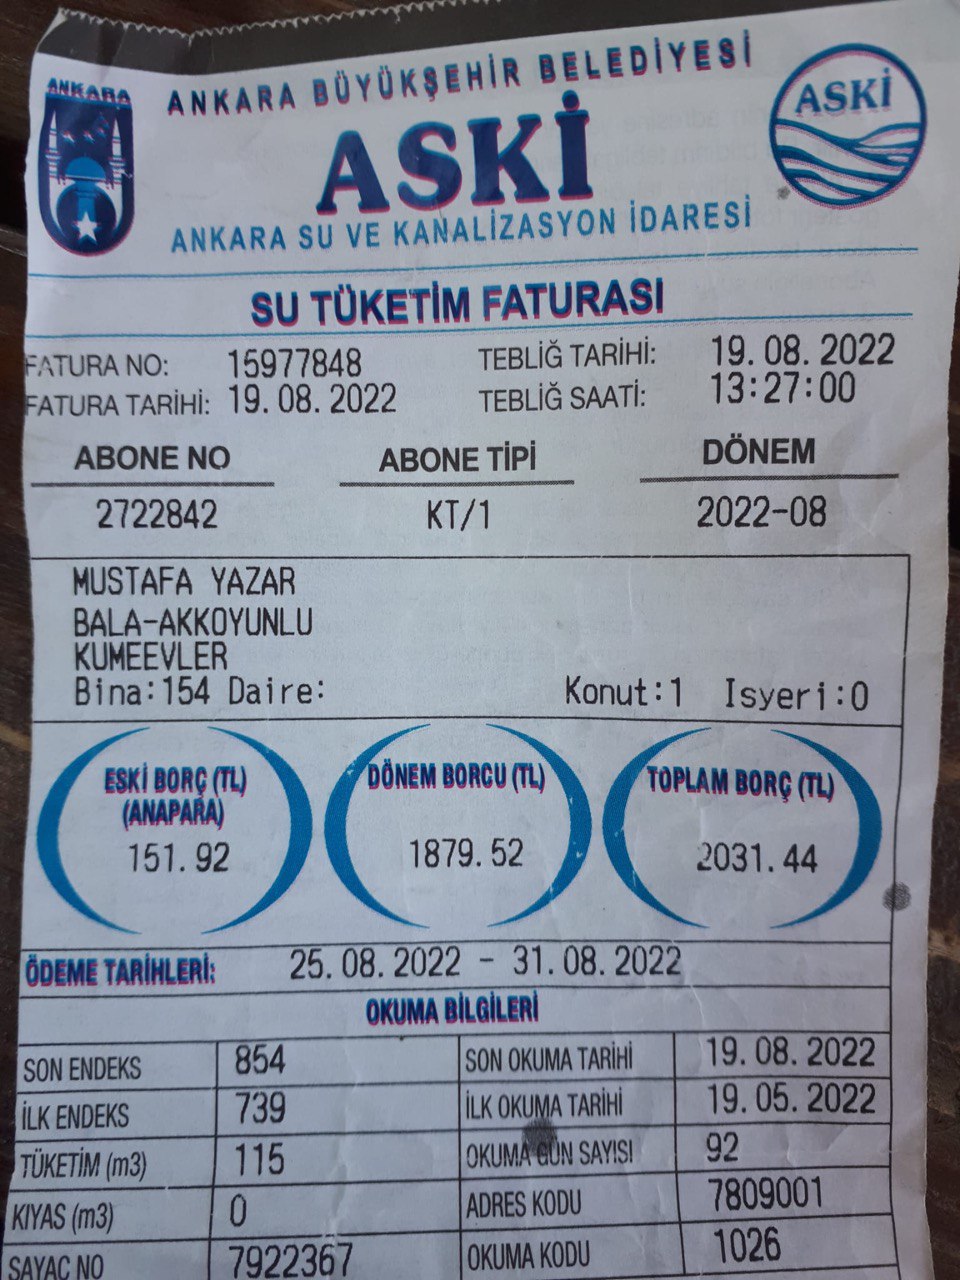 Ankara’da suya yüzde 80 zam! Mansur Yavaş ’indirim’ sözünü unuttu: Faturaları ödemek için inek satıyorlar